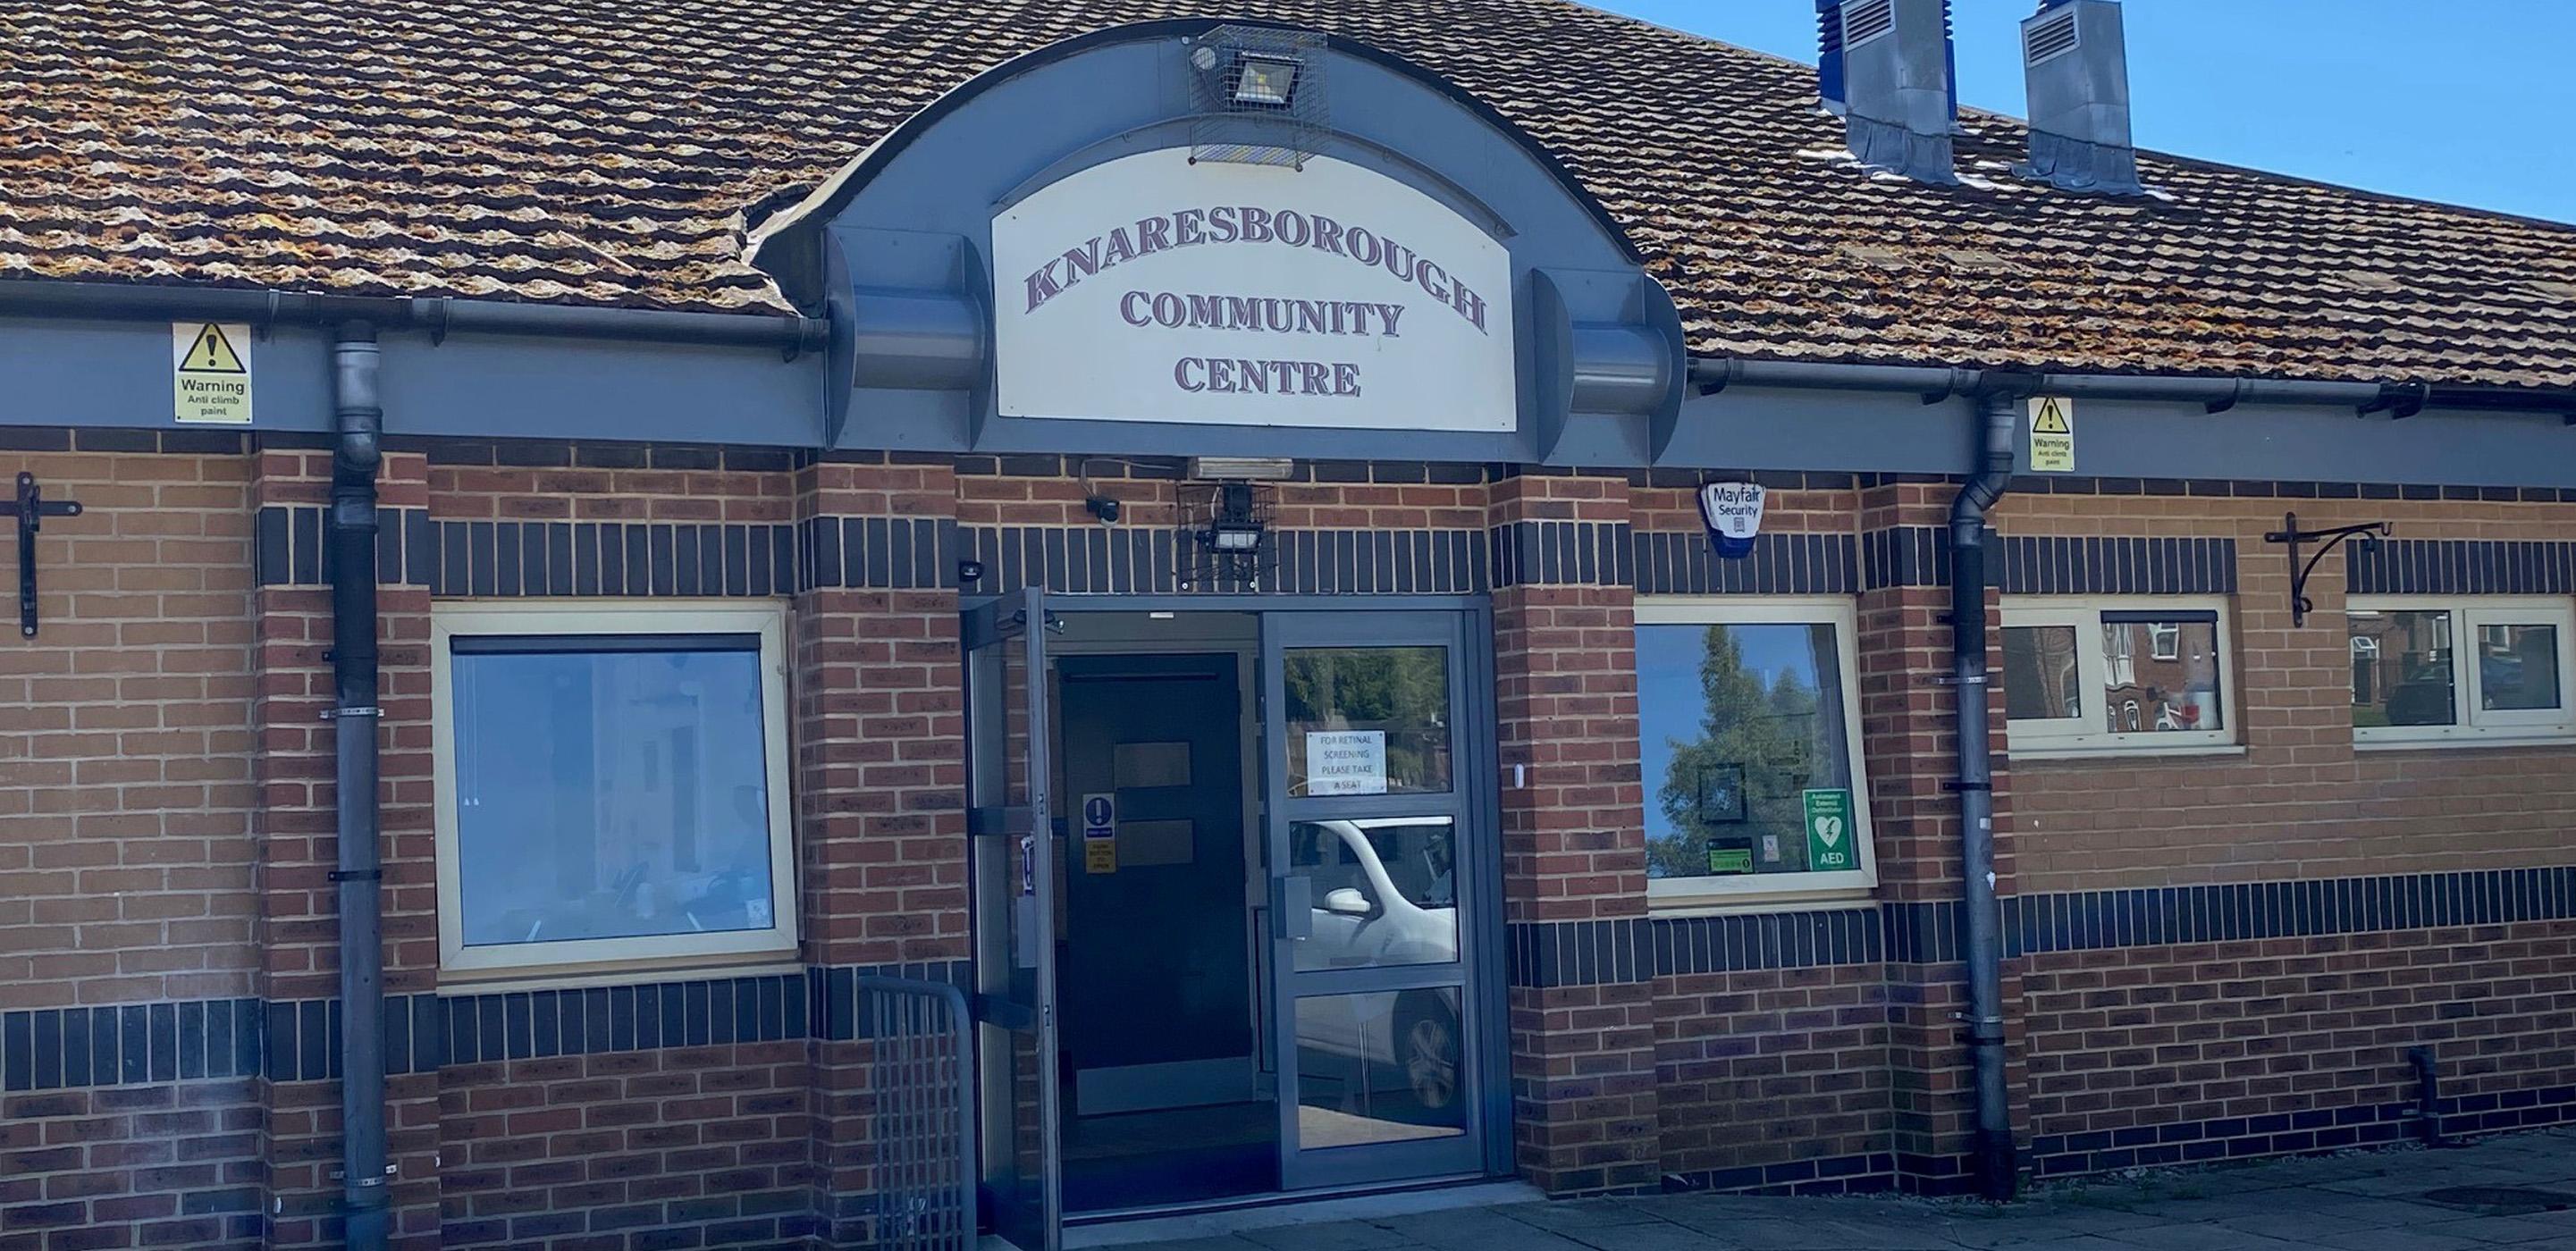 Knaresborough Community Centre